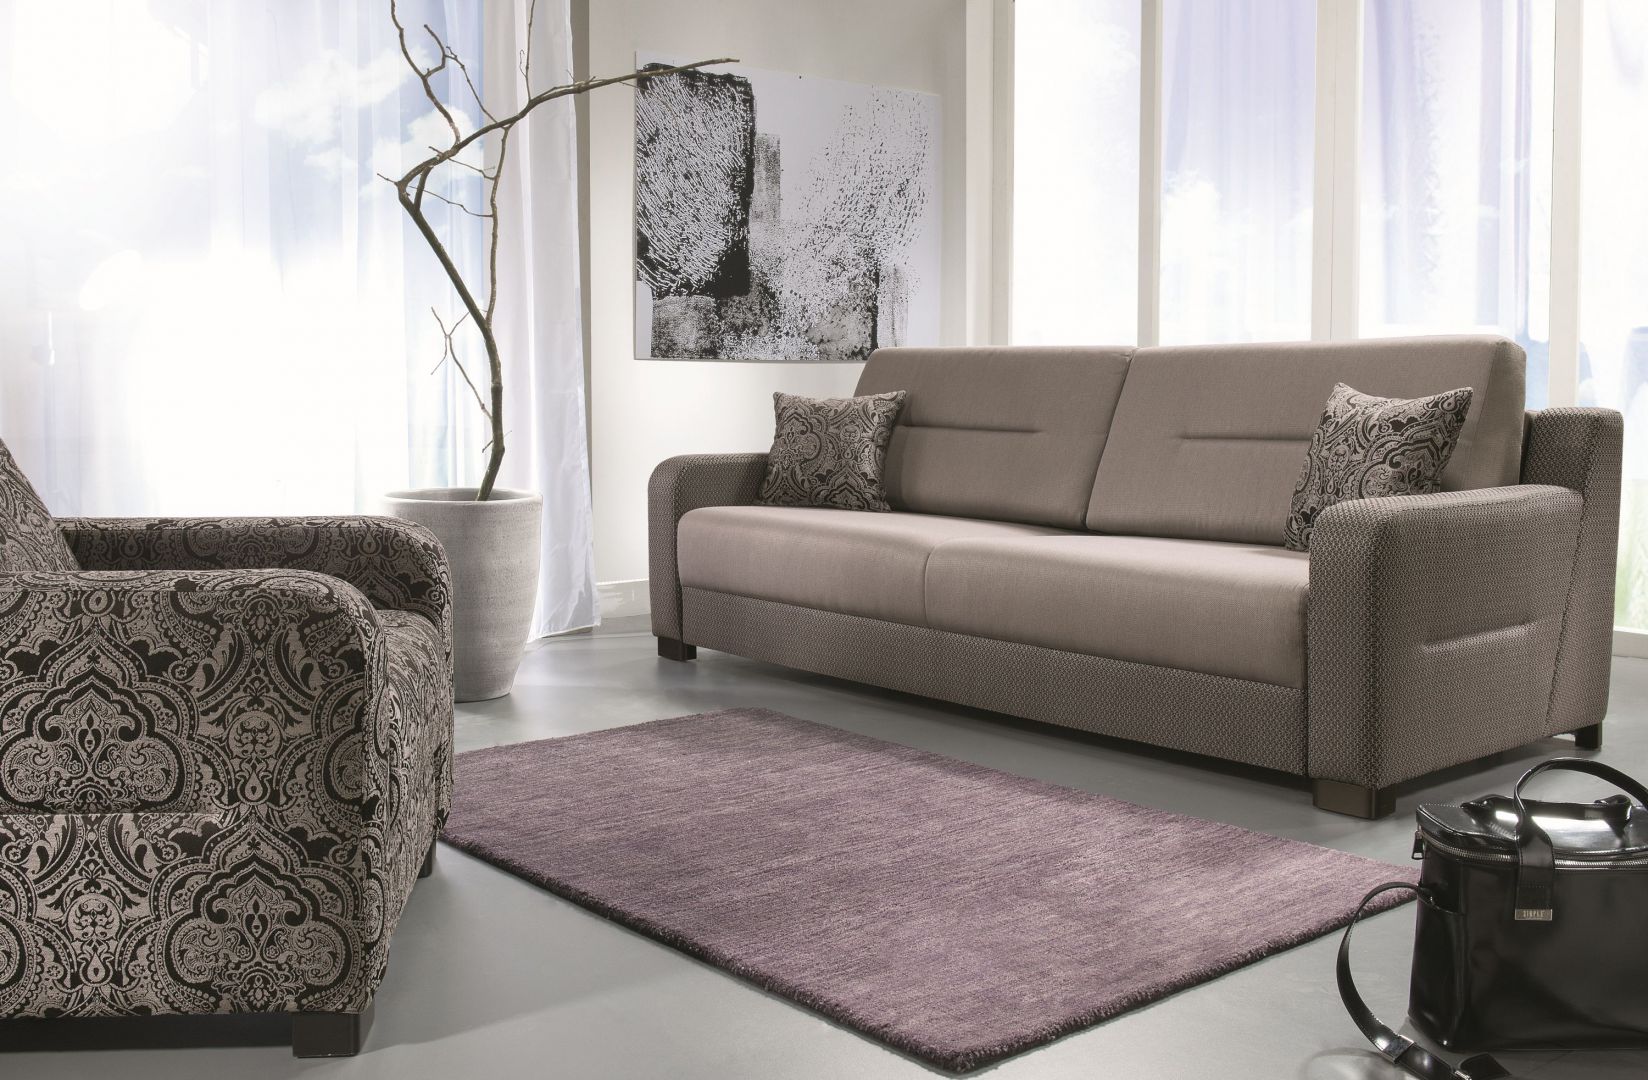 Sofa Modo wyróżnia się klasyczna formą. Wysokie oparcie zapewnia komfort wypoczynku. Cena: około 2.200 zł. Fot. Libro